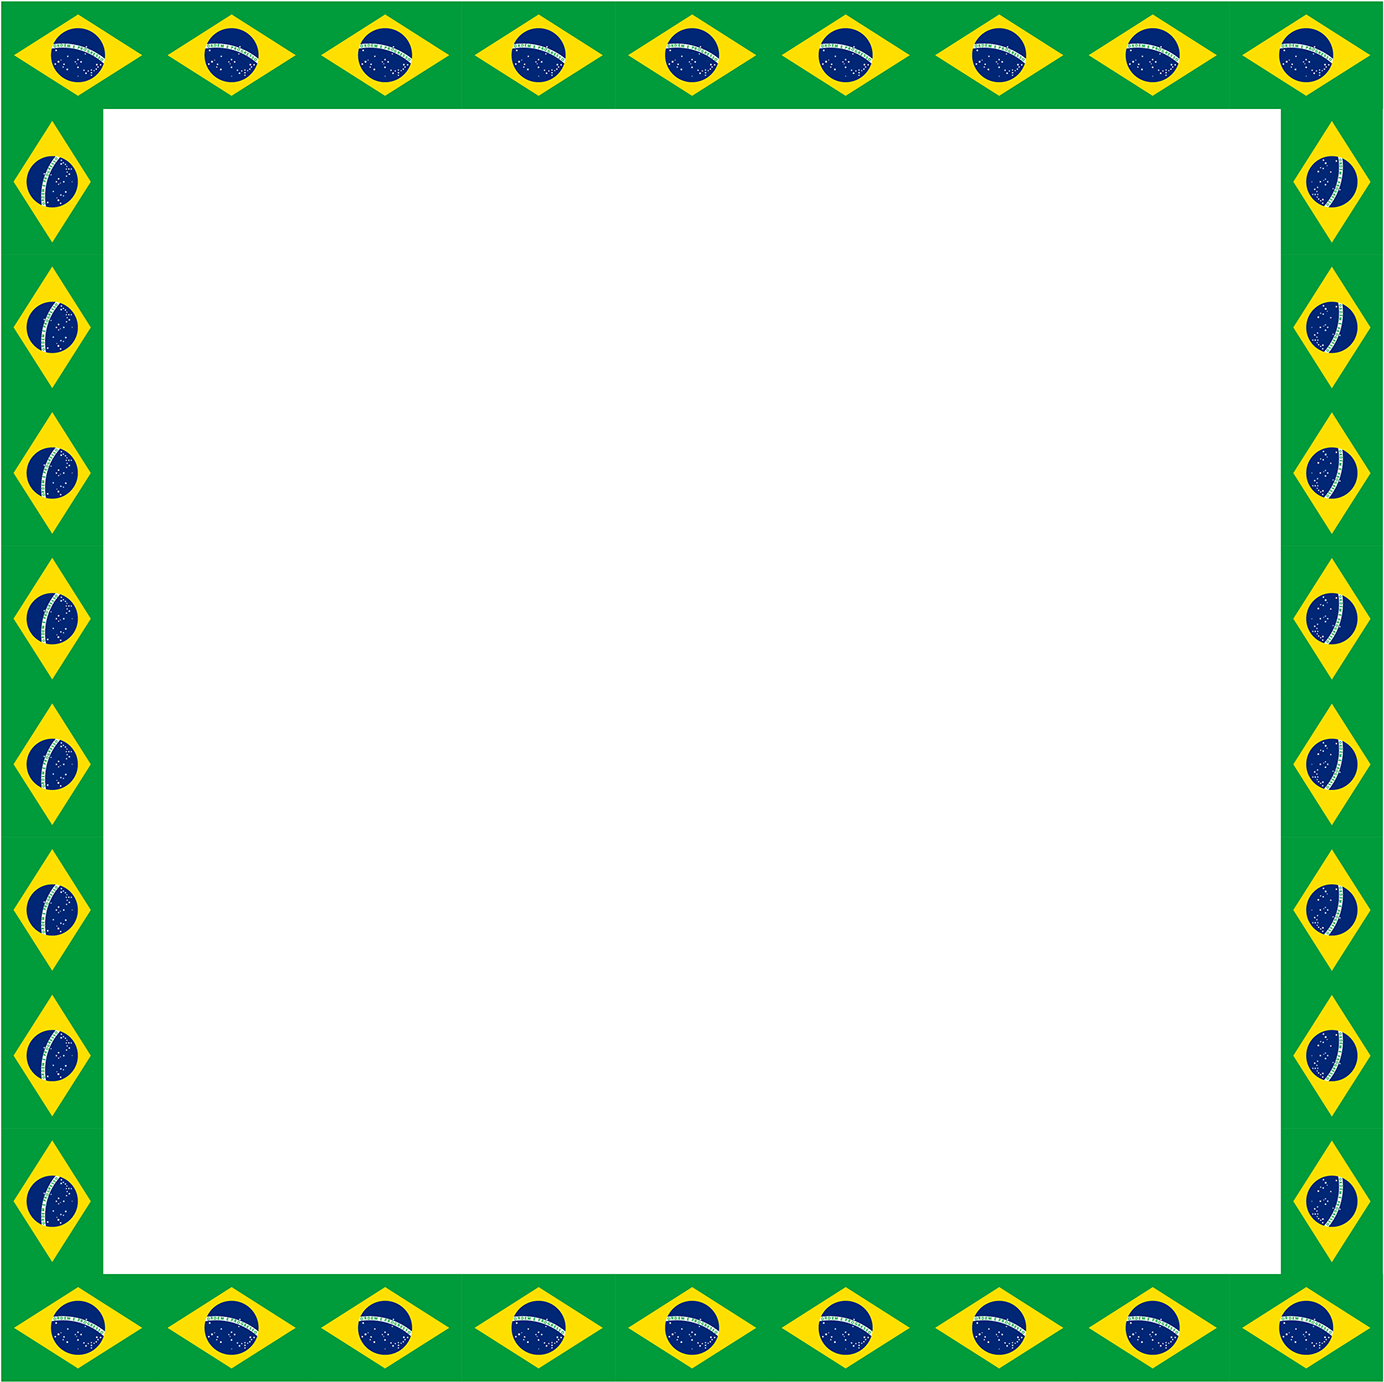 Pele Brazil Flag Border Illustration Picture Frame